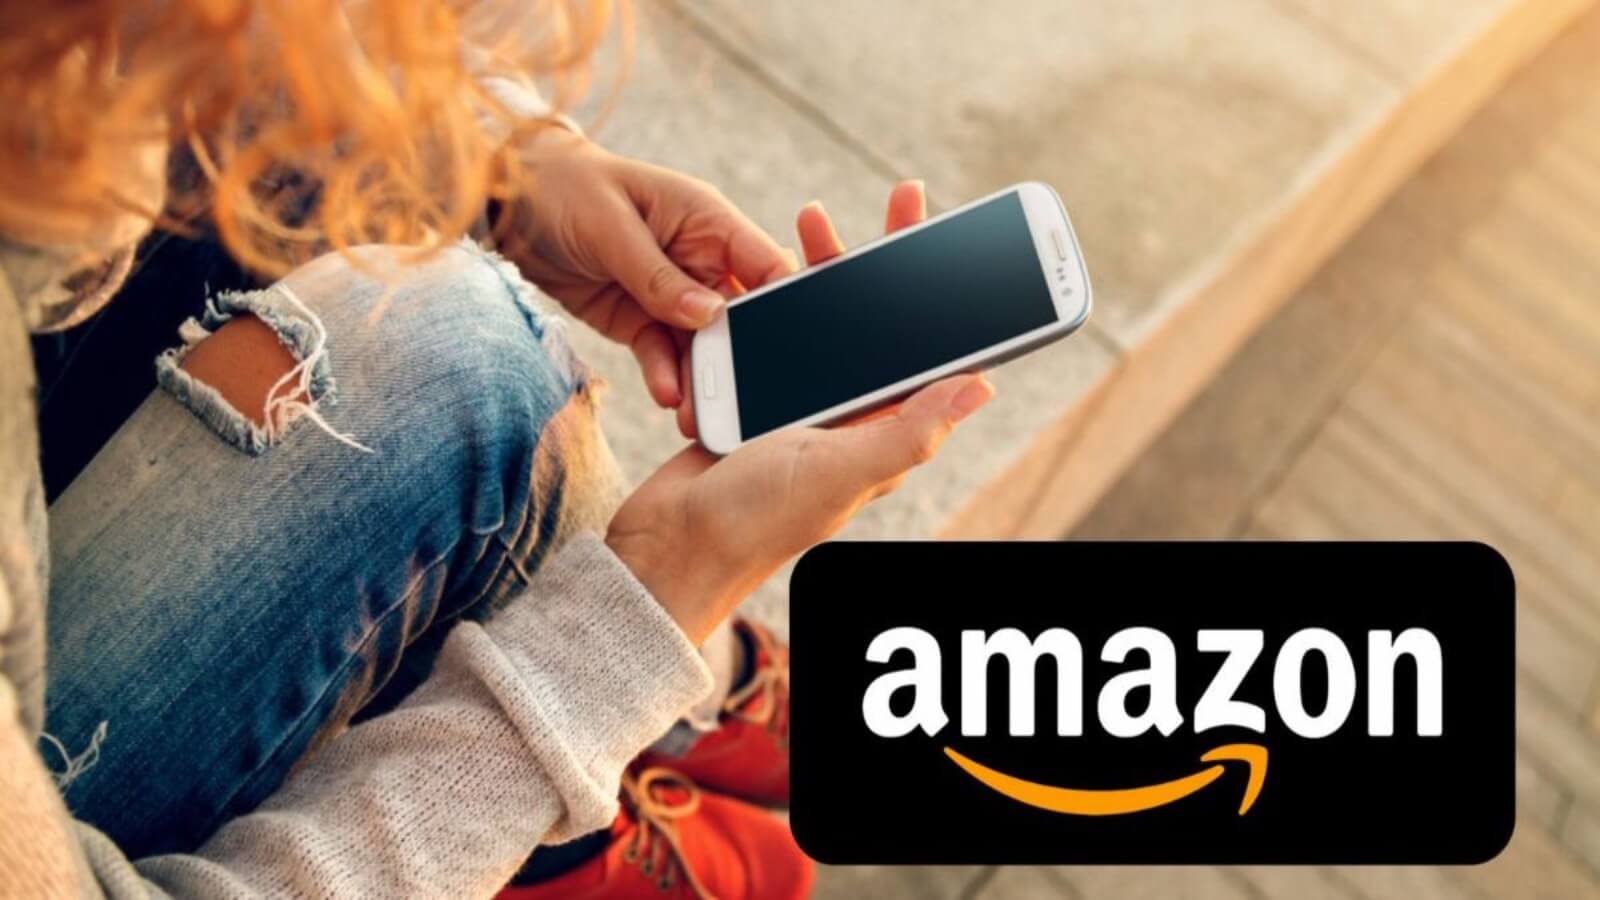 Amazon brucia Unieuro, lista di codici sconto gratis e prezzi al 90%